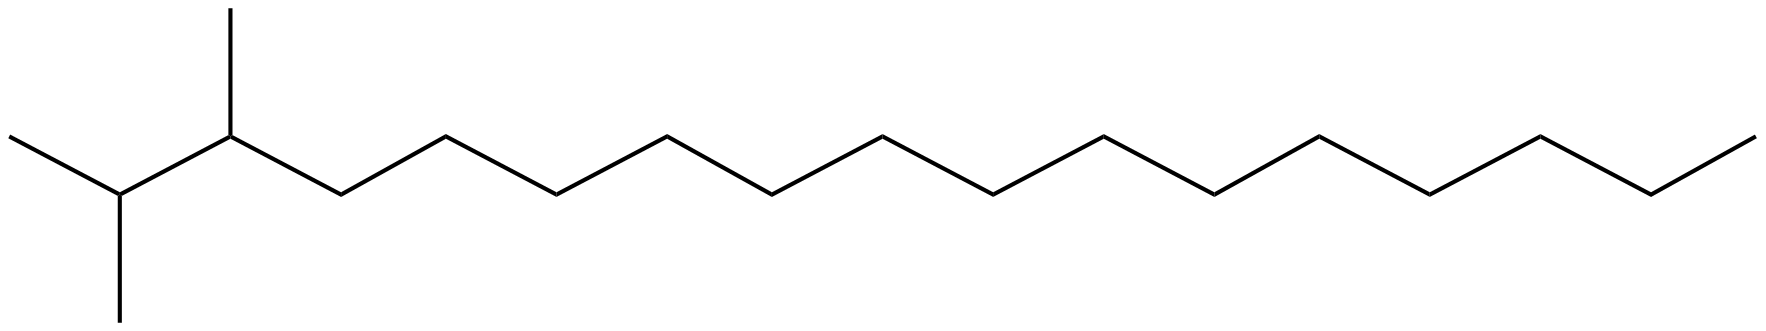 Image of heptadecane, 2,3-dimethyl-